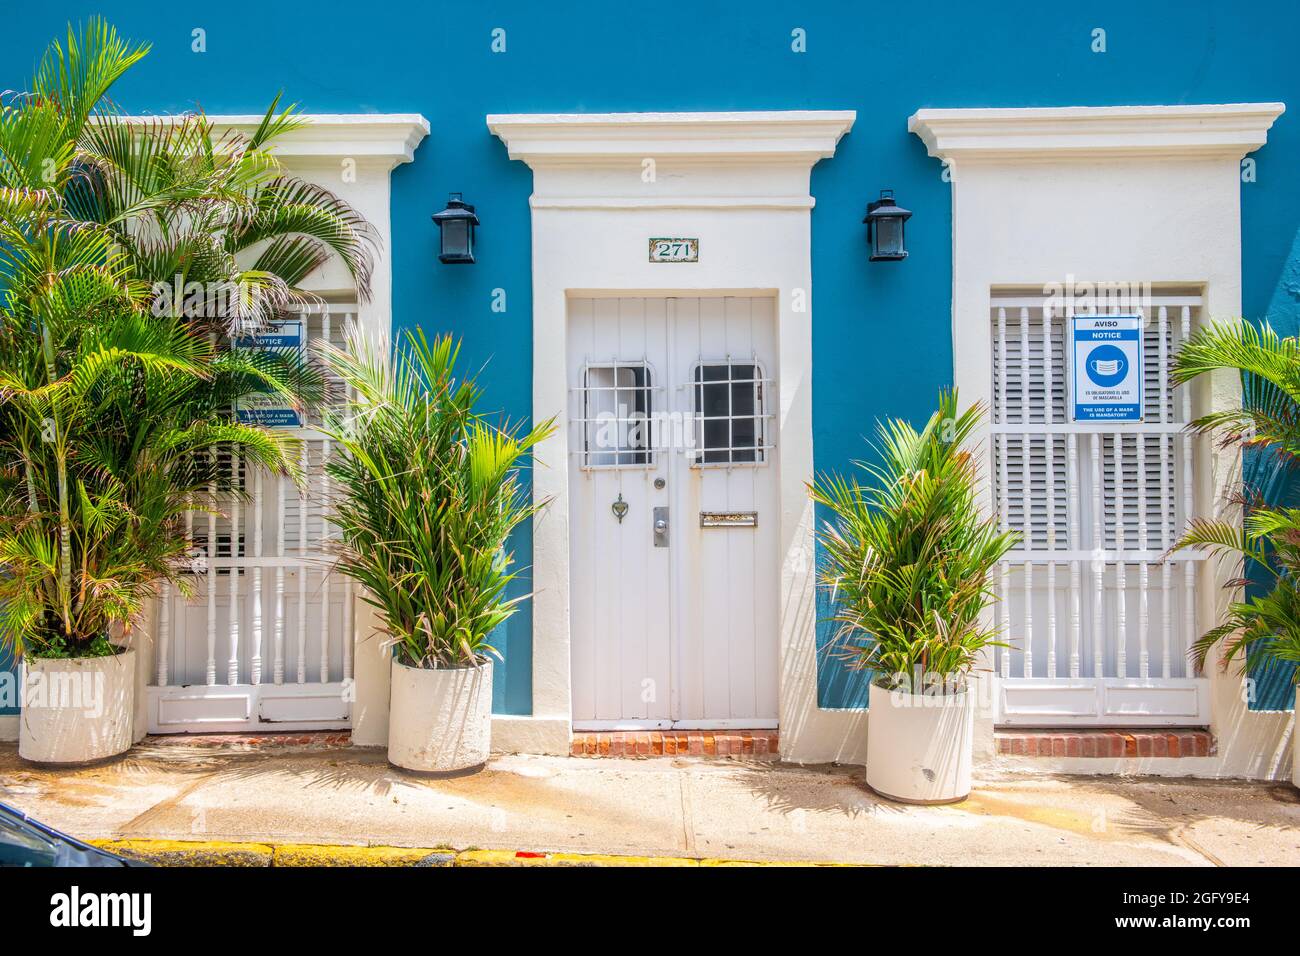 Des plantes tropicales en pot se trouvent en face d'une belle maison bleue. - Porto Rico Banque D'Images